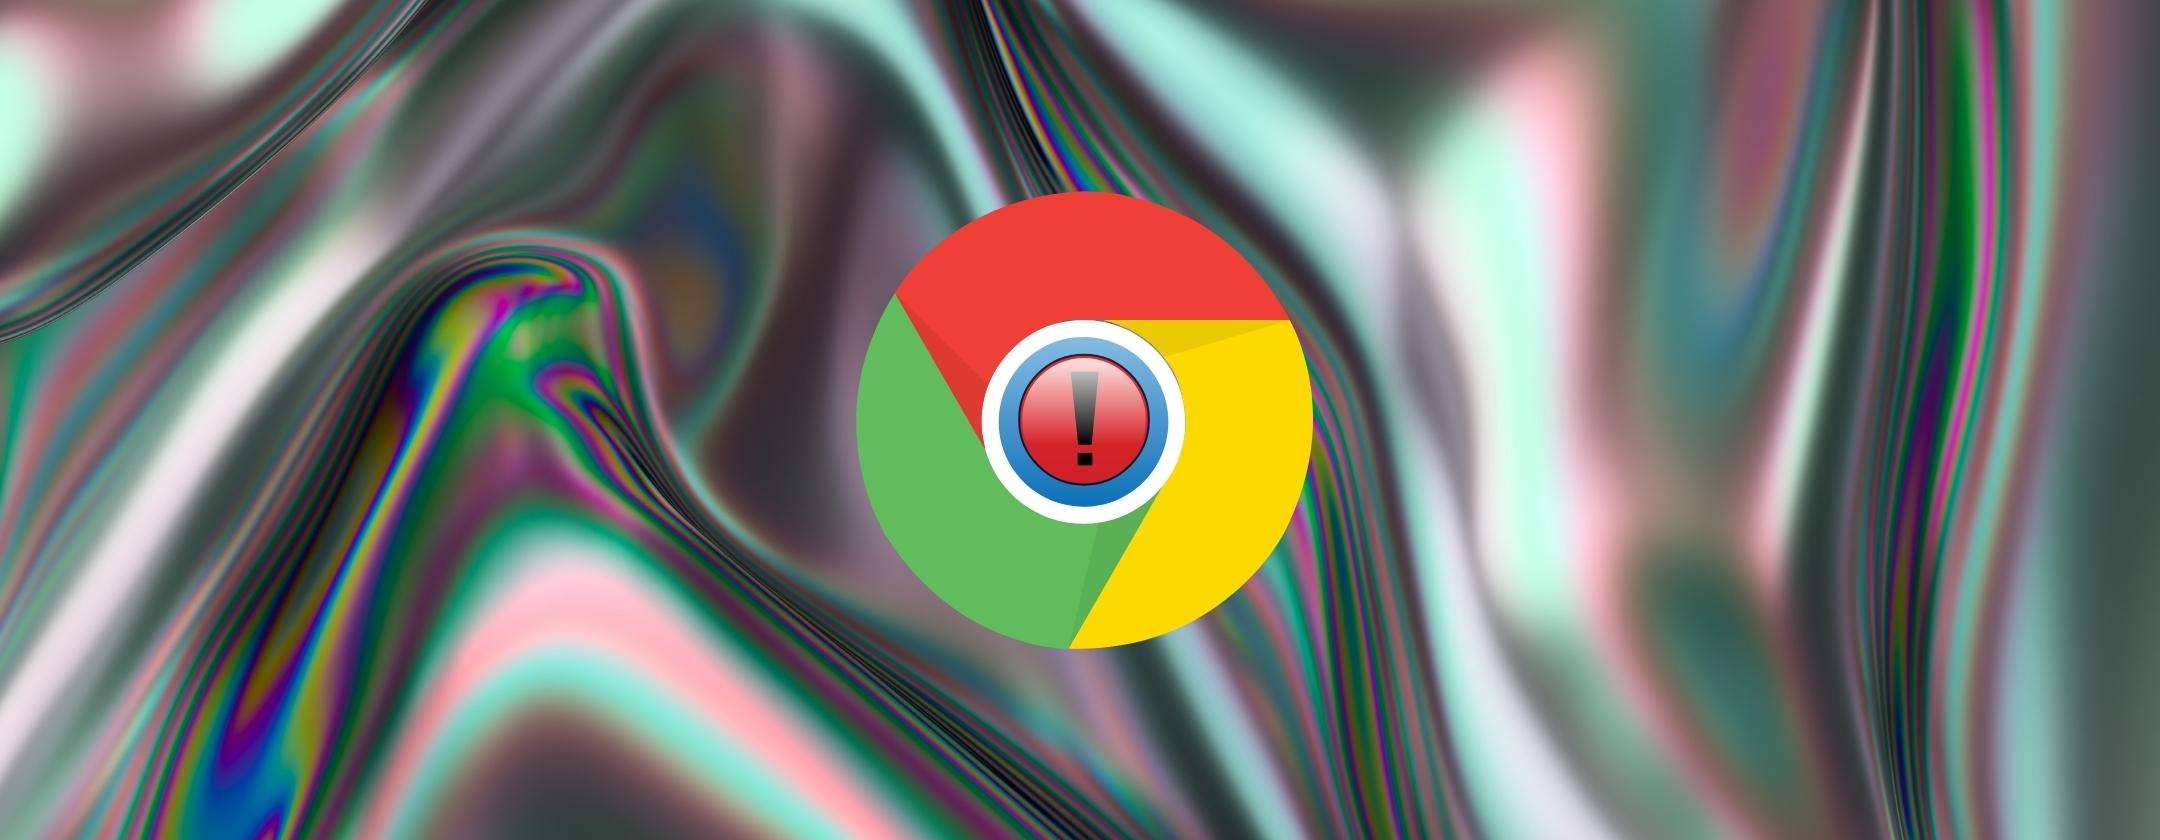 Google Chrome: attenzione all'estensione fake da 200mila download